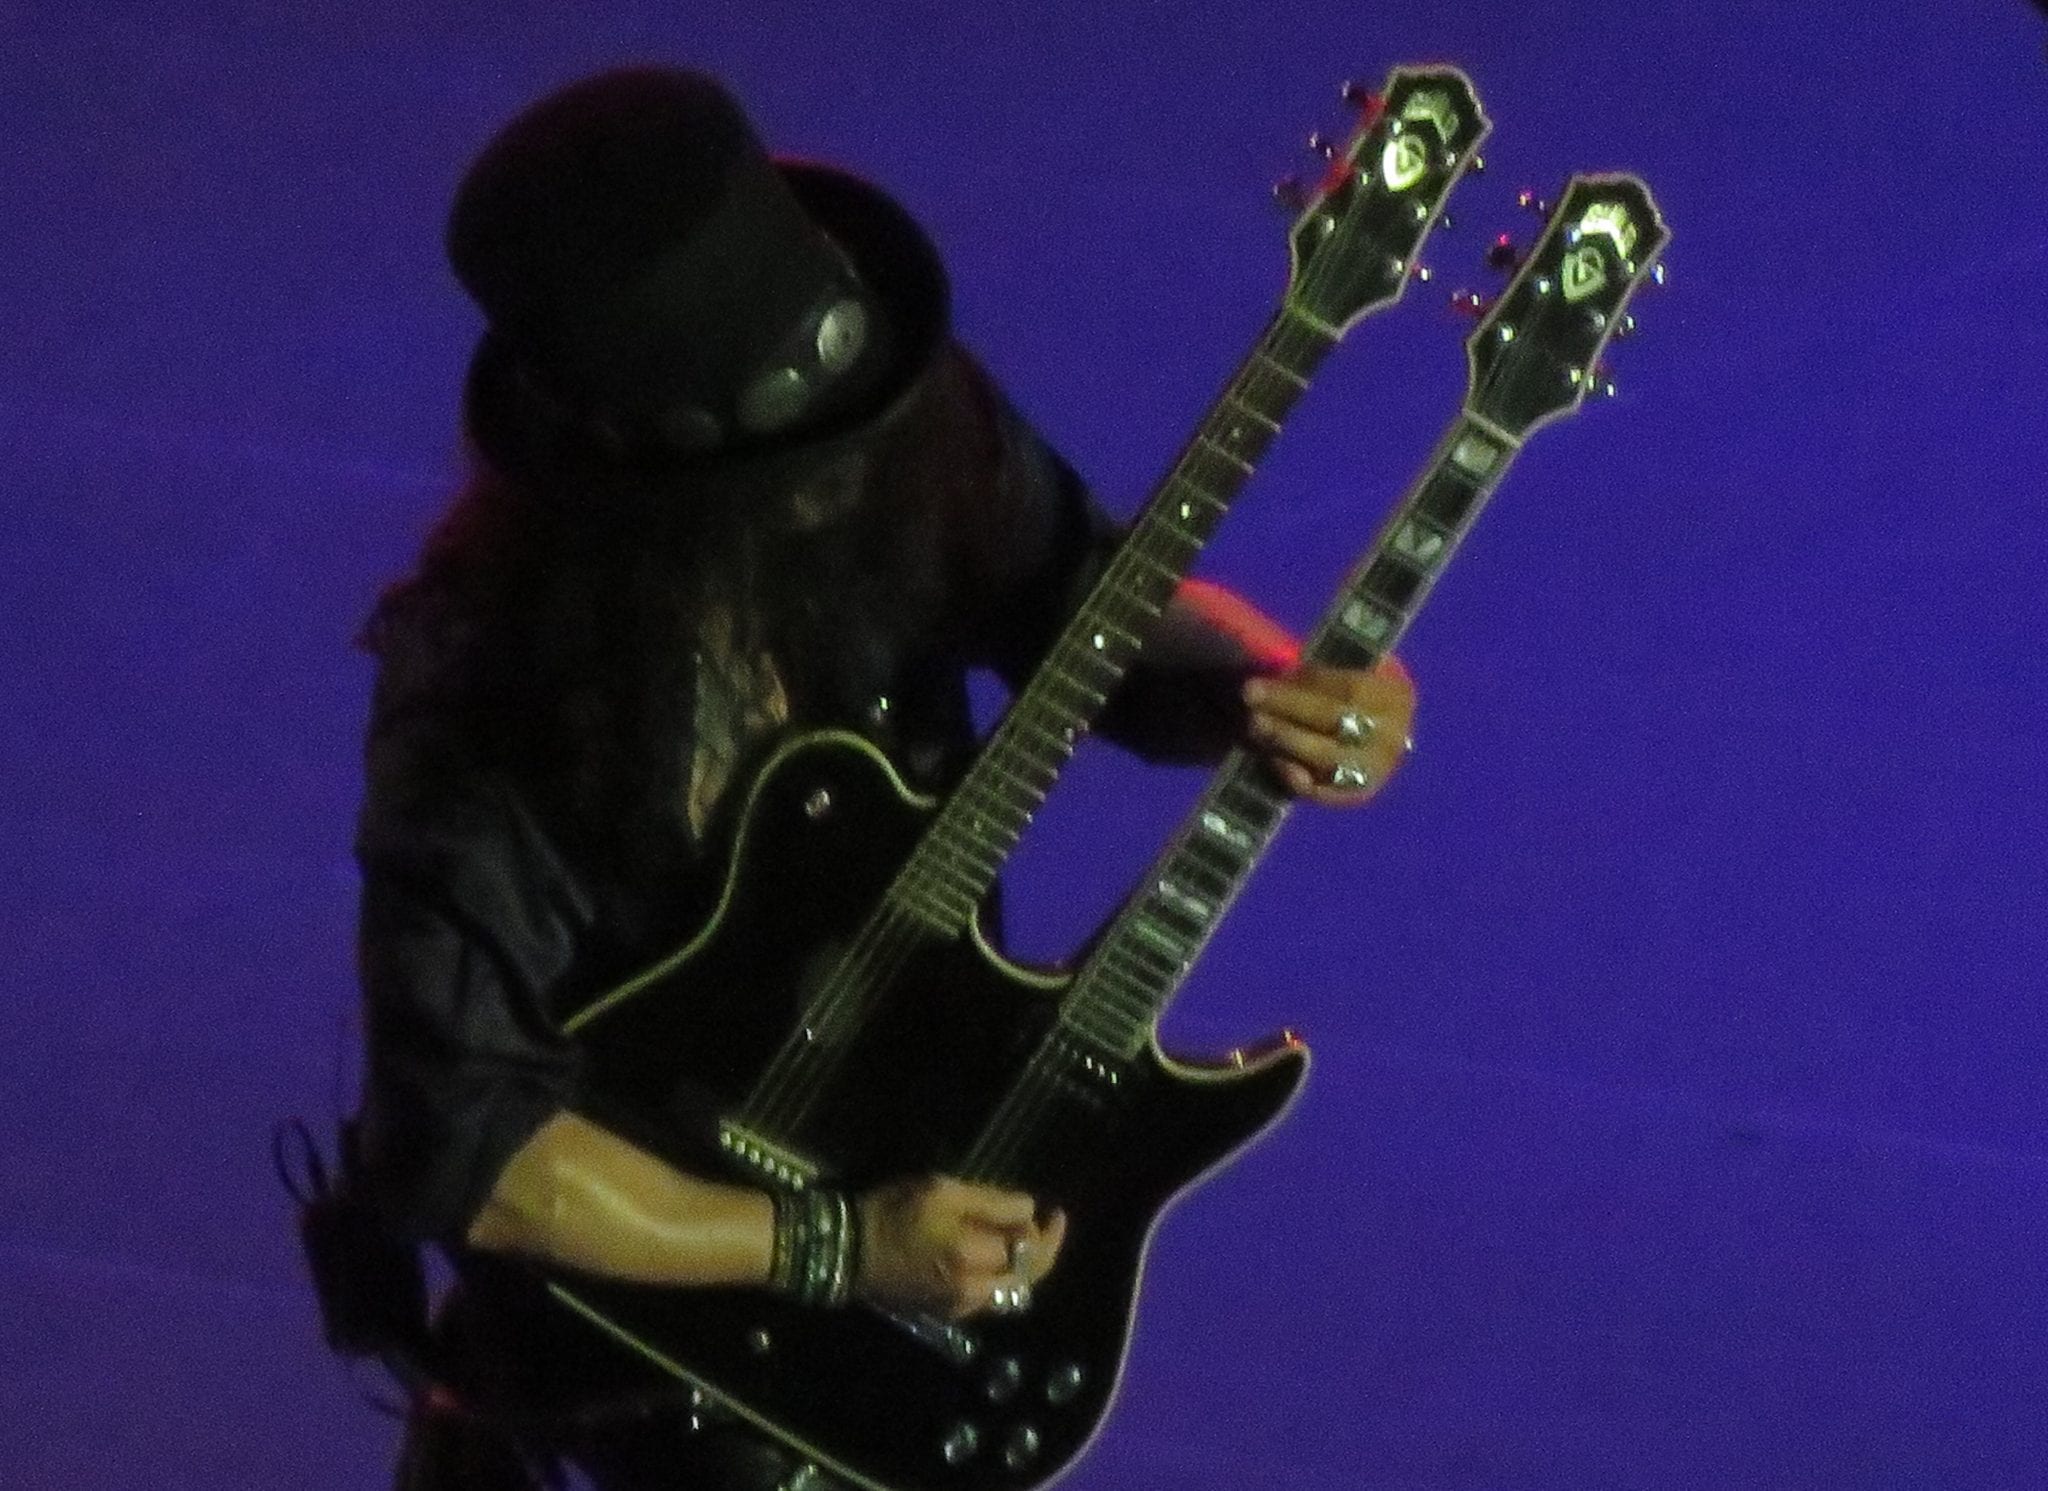 Crónica del concierto de Guns N’ Roses en San Mamés, Bilbao, 30-05-2017